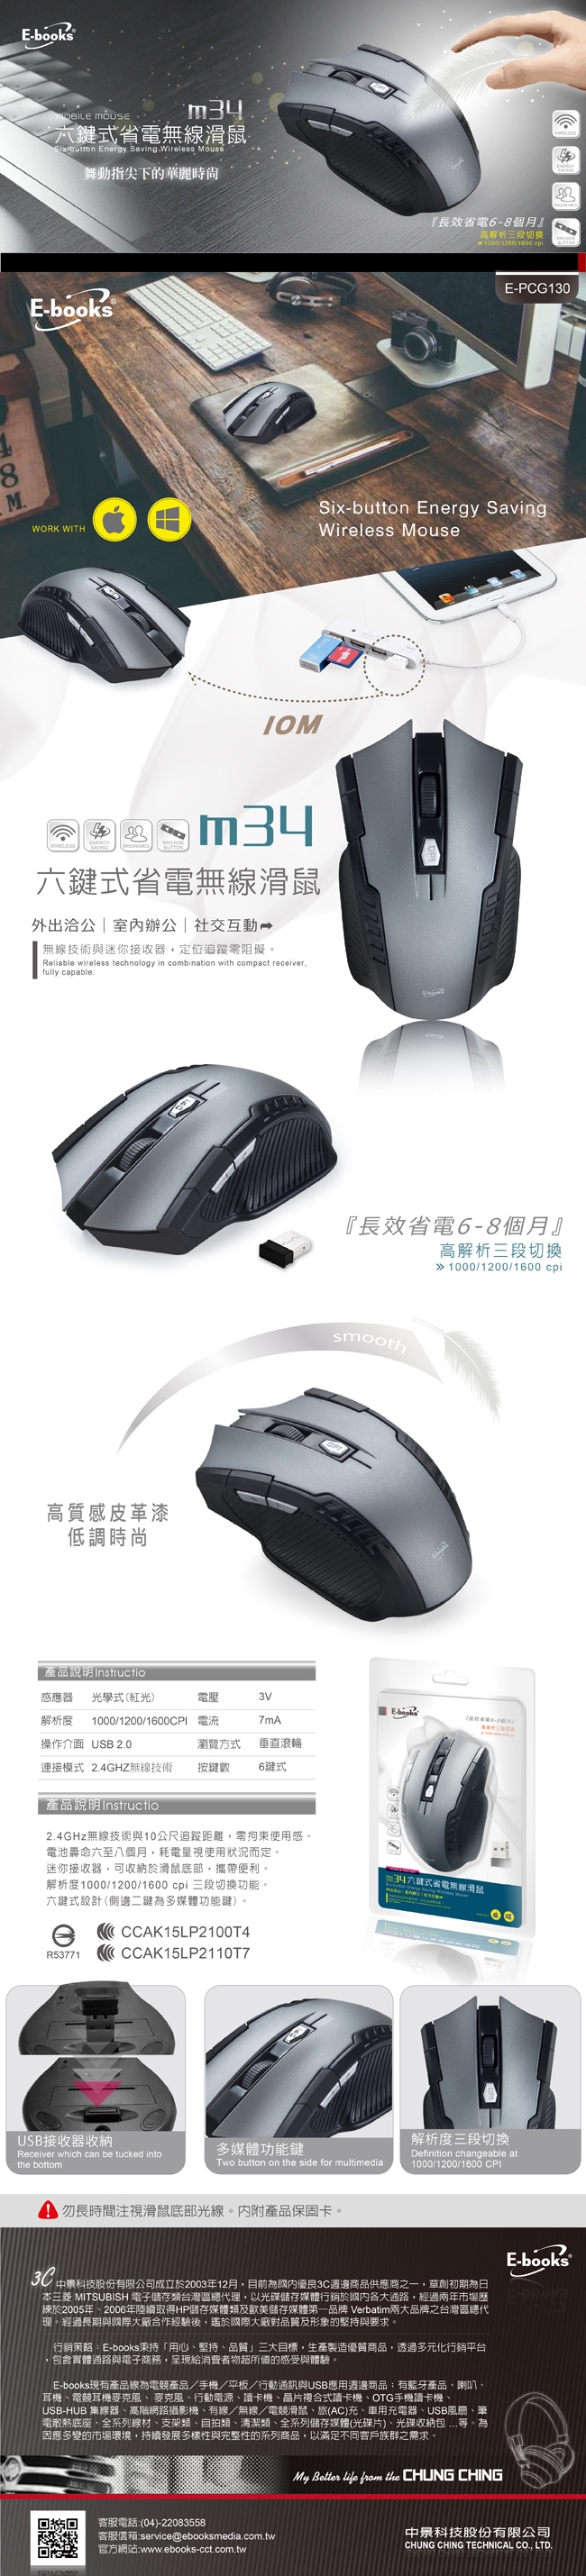 E-books 炫光打字機靜音有線鍵盤+六鍵式省電無線滑鼠 (Z6+M34)